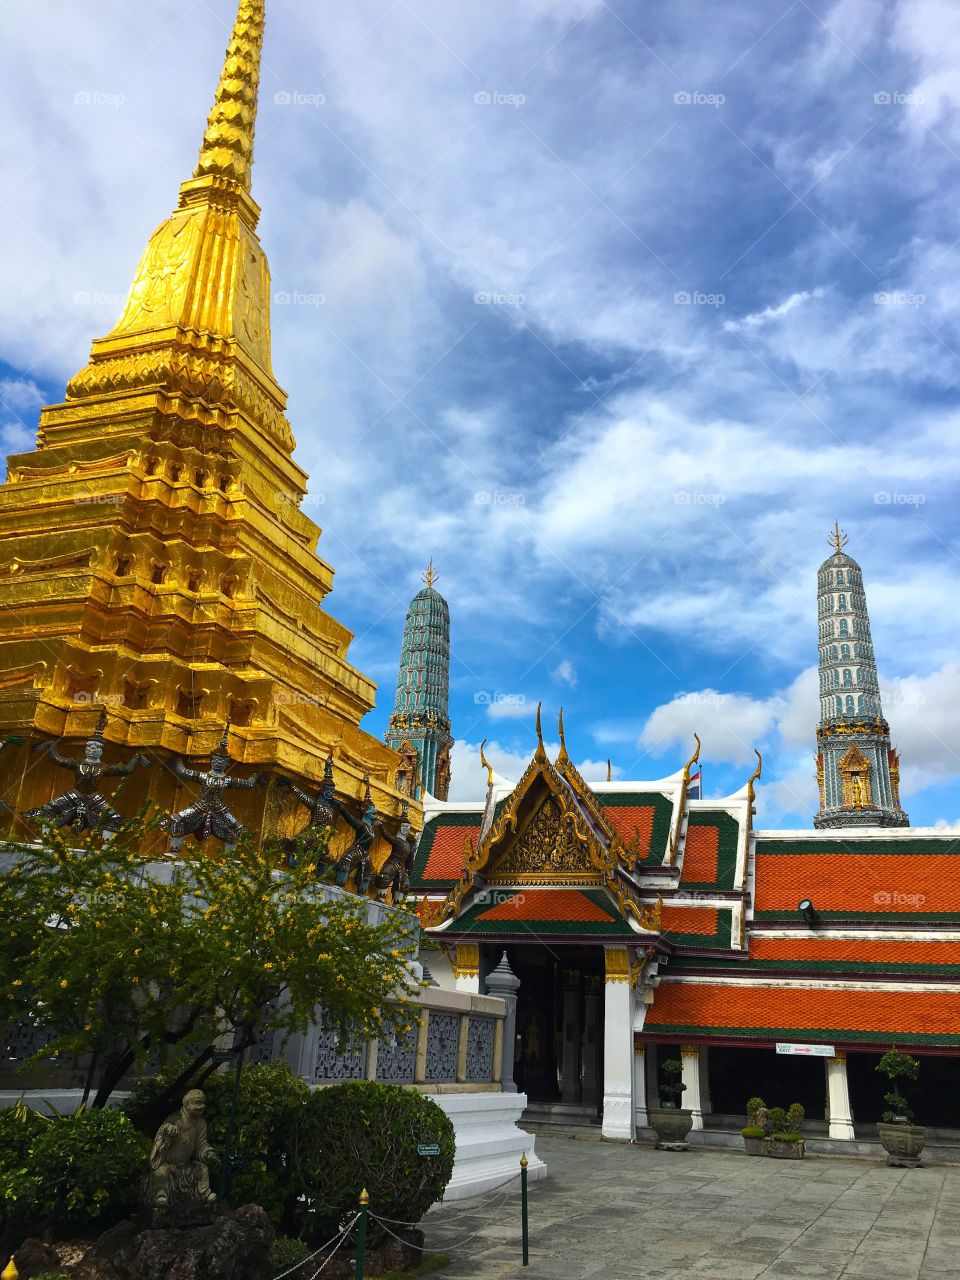 Grand Palace / Bangkok Thailand 23